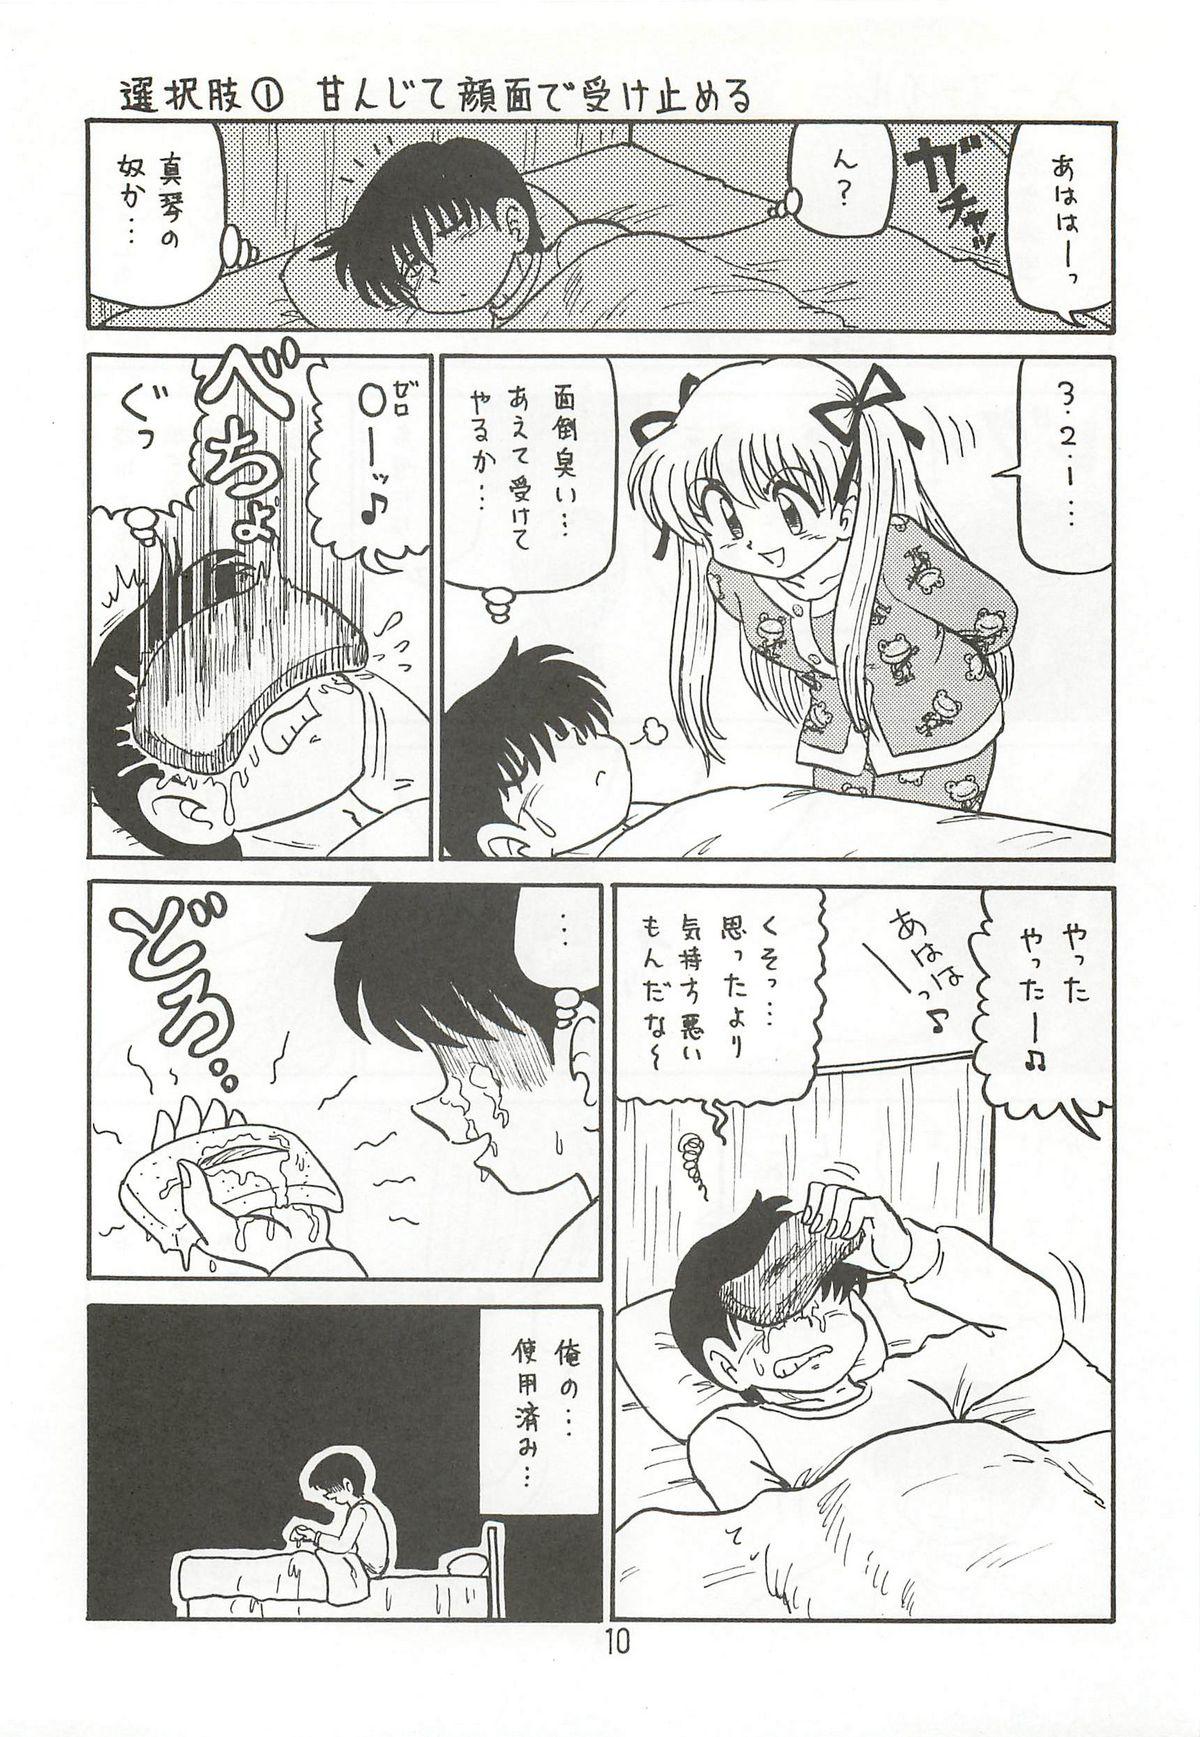 Kink Ayu to Makoto zoukyoukaiteiban - Kanon Assfucking - Page 9